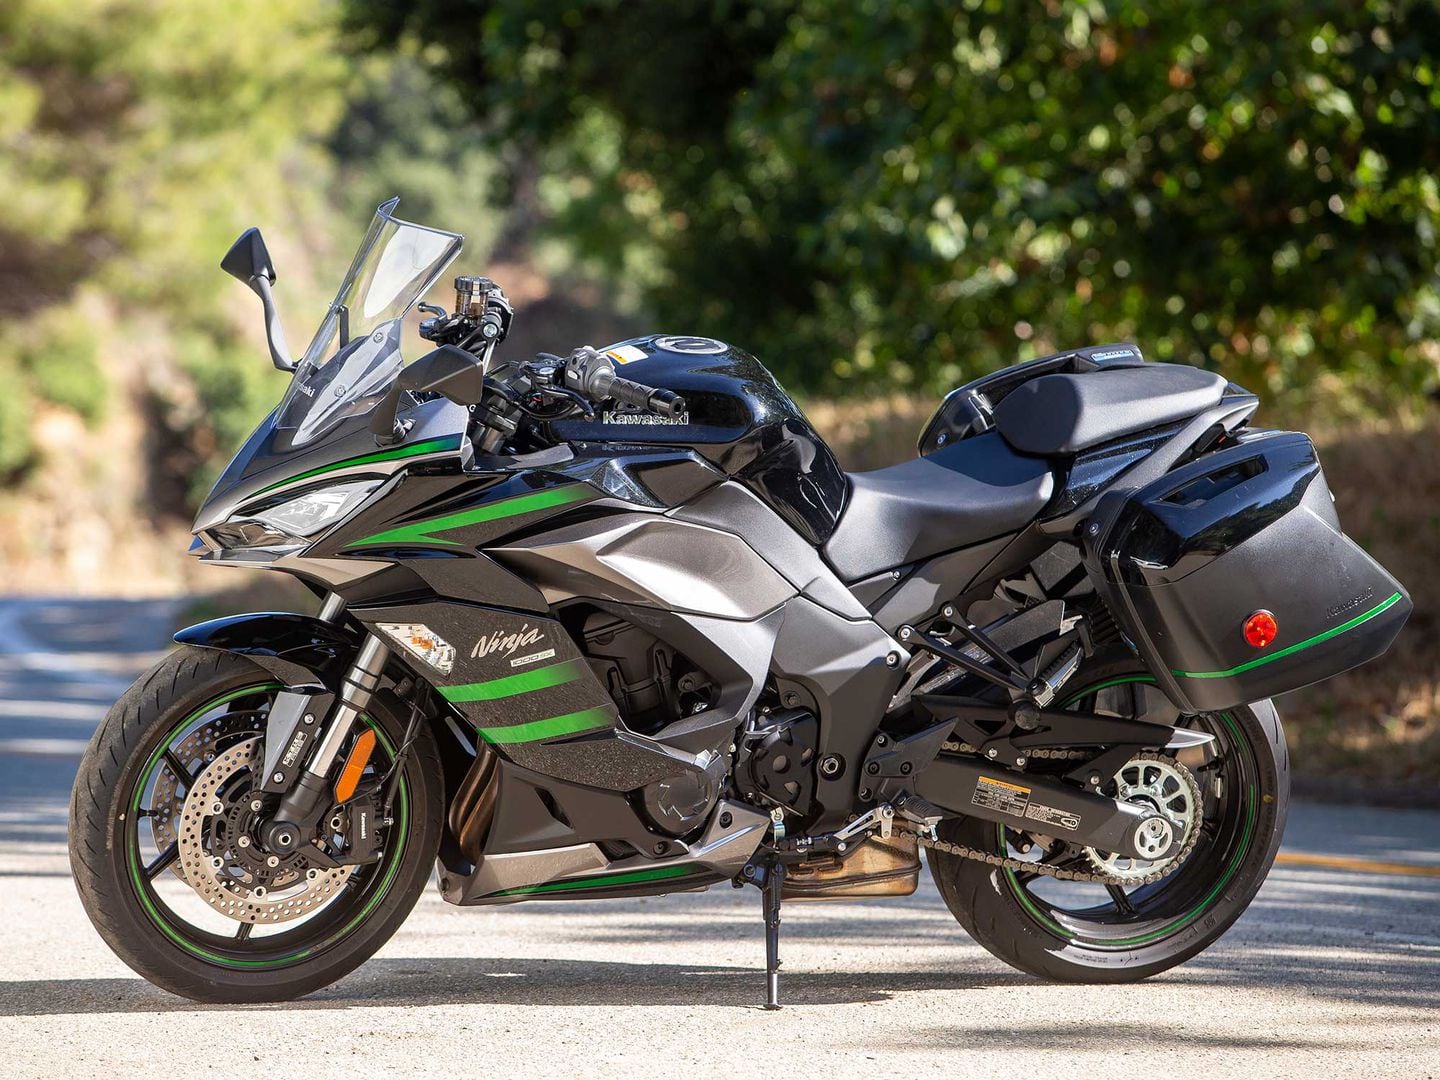 2020 Kawasaki Ninja 1000 SX First Ride Review |